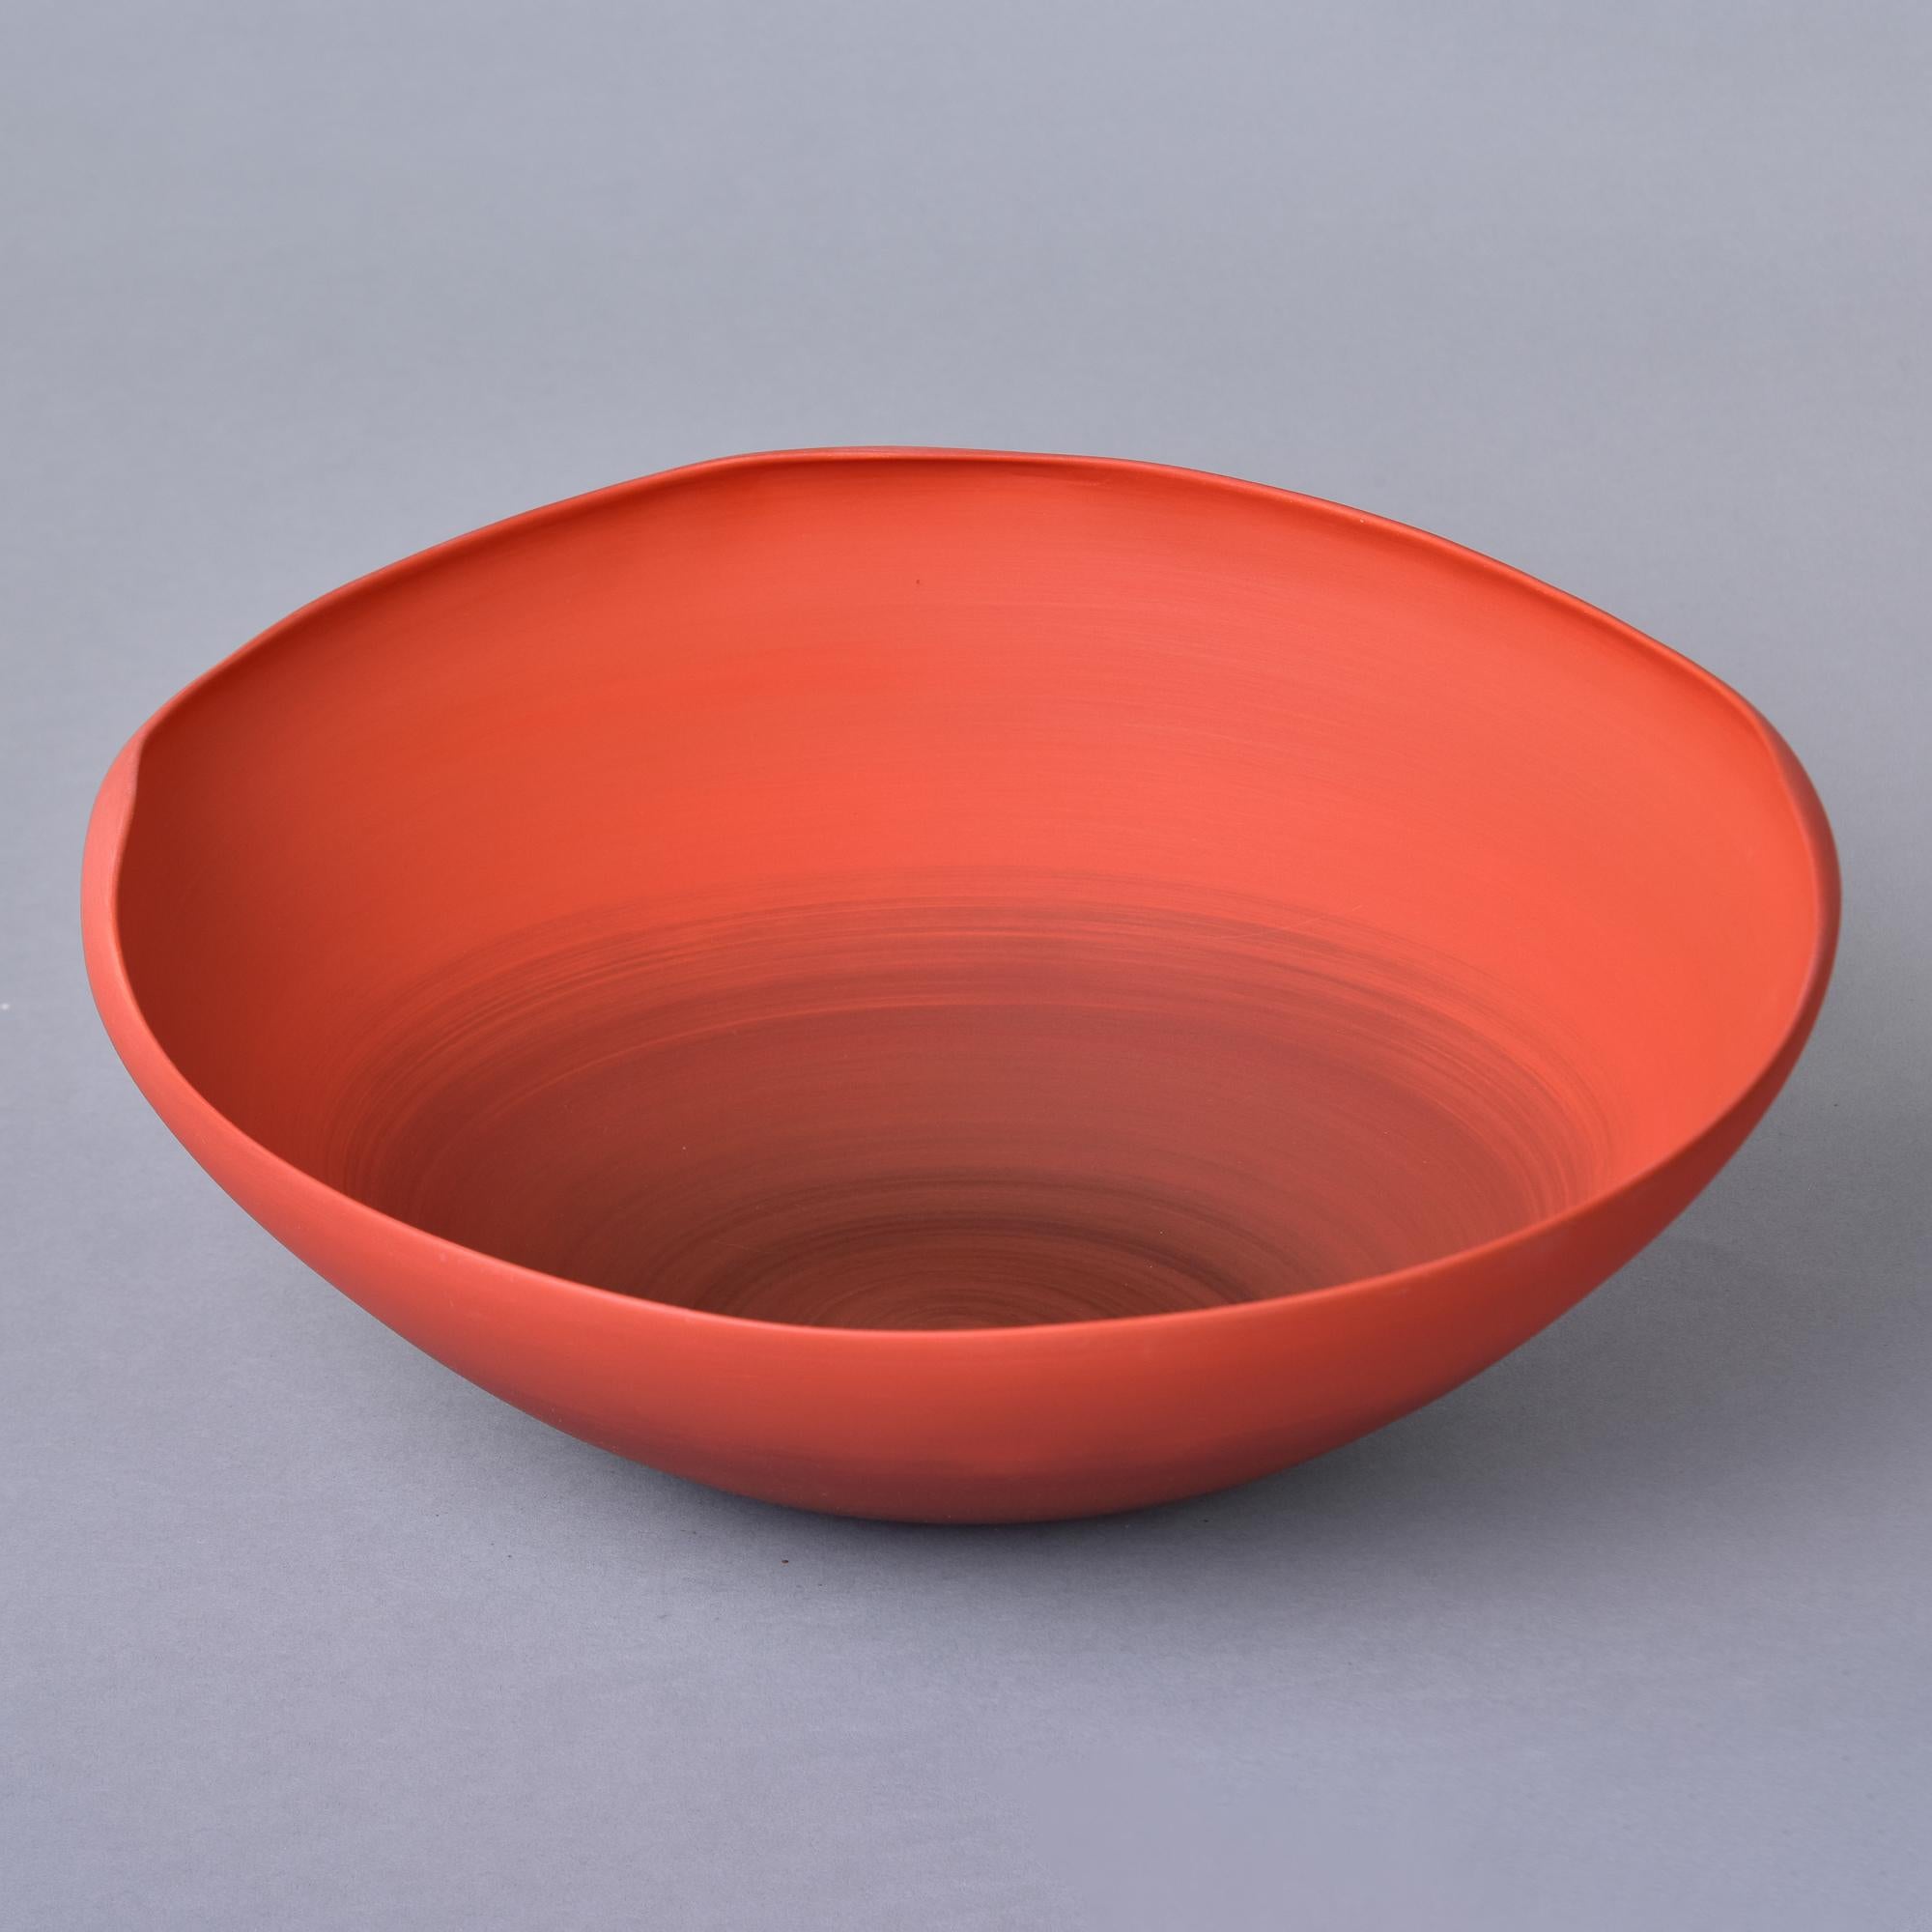 Nouveau et importé d'Italie, ce bol en poterie d'art de Rina Menardi est un bol à parois fines avec un bord irrégulier et une subtile glaçure rouge coquelicot de style ombre. Le dessous de la base porte la marque du fabricant. Nouveau, sans aucun